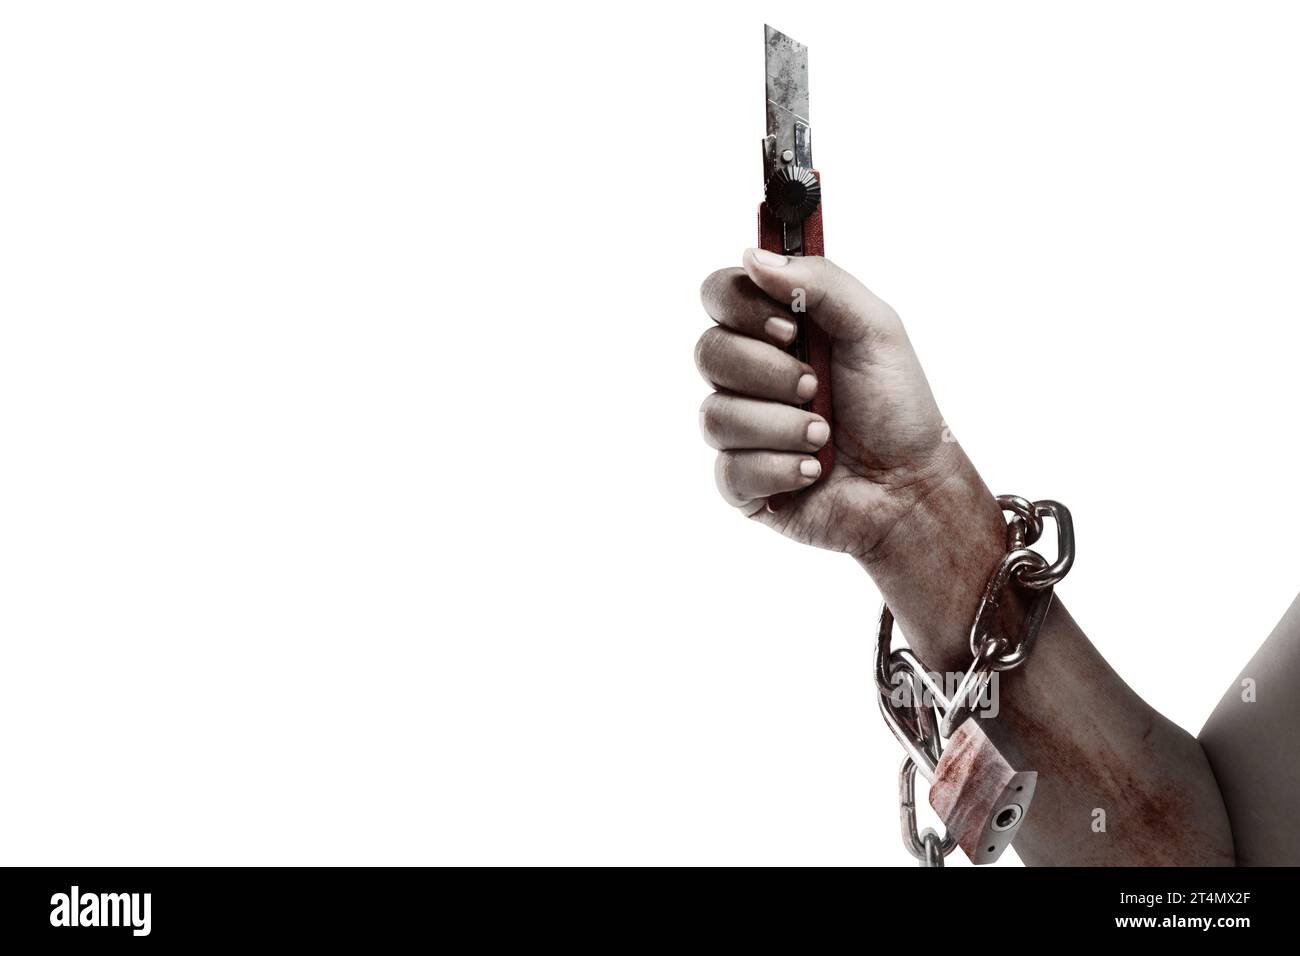 Die Hand eines gruseligen Zombies mit Blut und Wunden, der ein Messer hält, während er an die Eisenkette gebunden ist, ist auf einem weißen Hintergrund isoliert Stockfoto